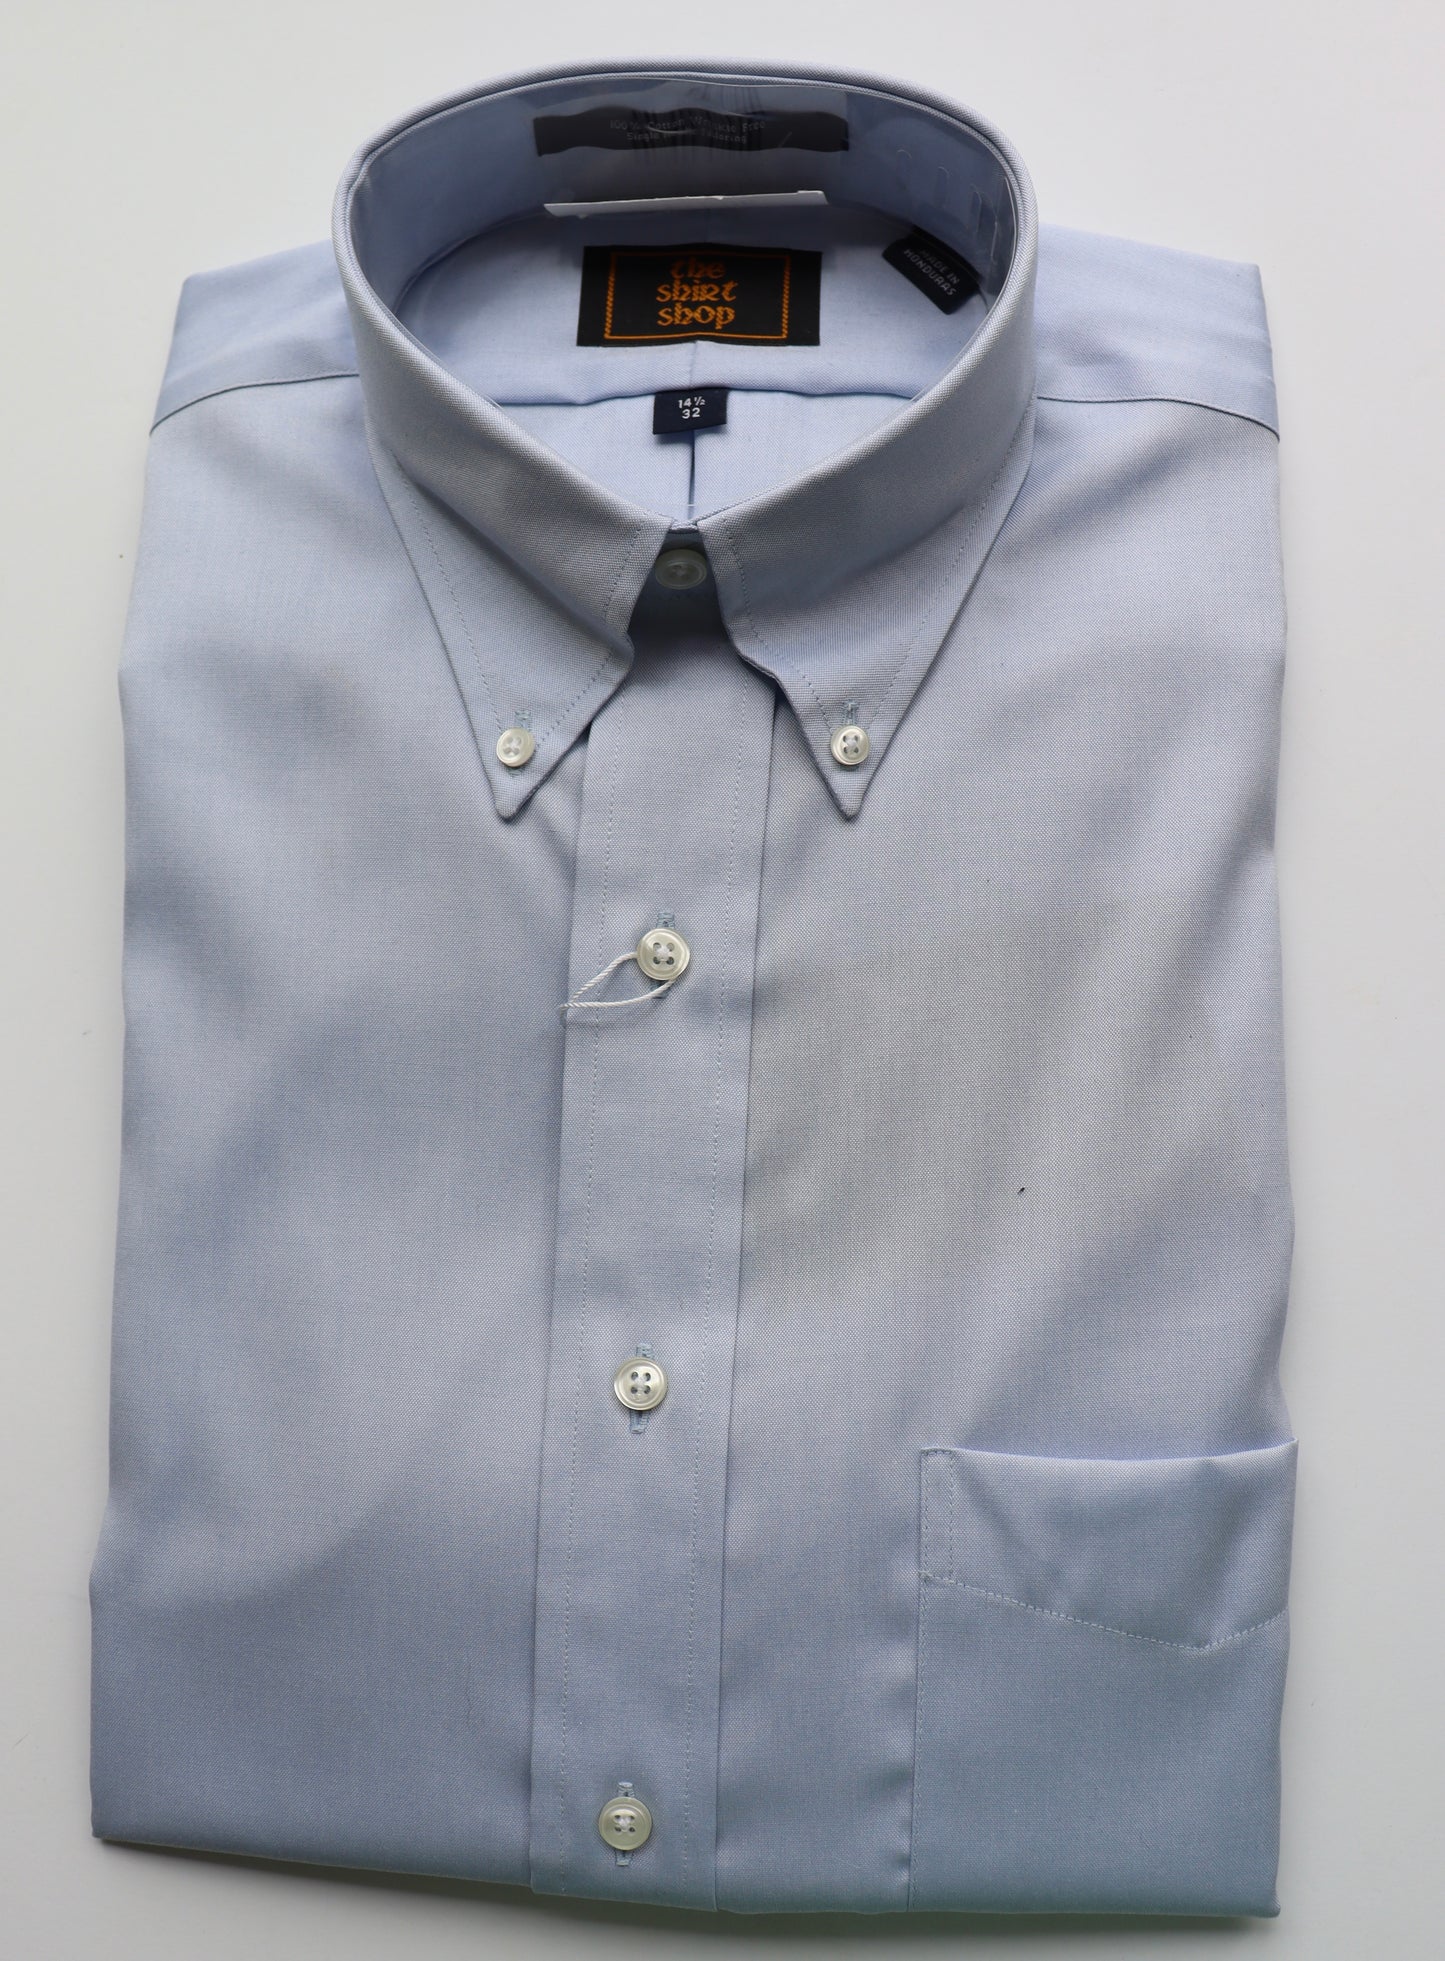 The Shirt Shop Dress Shirt - Blue Button Down (Exact Sleeve Length)